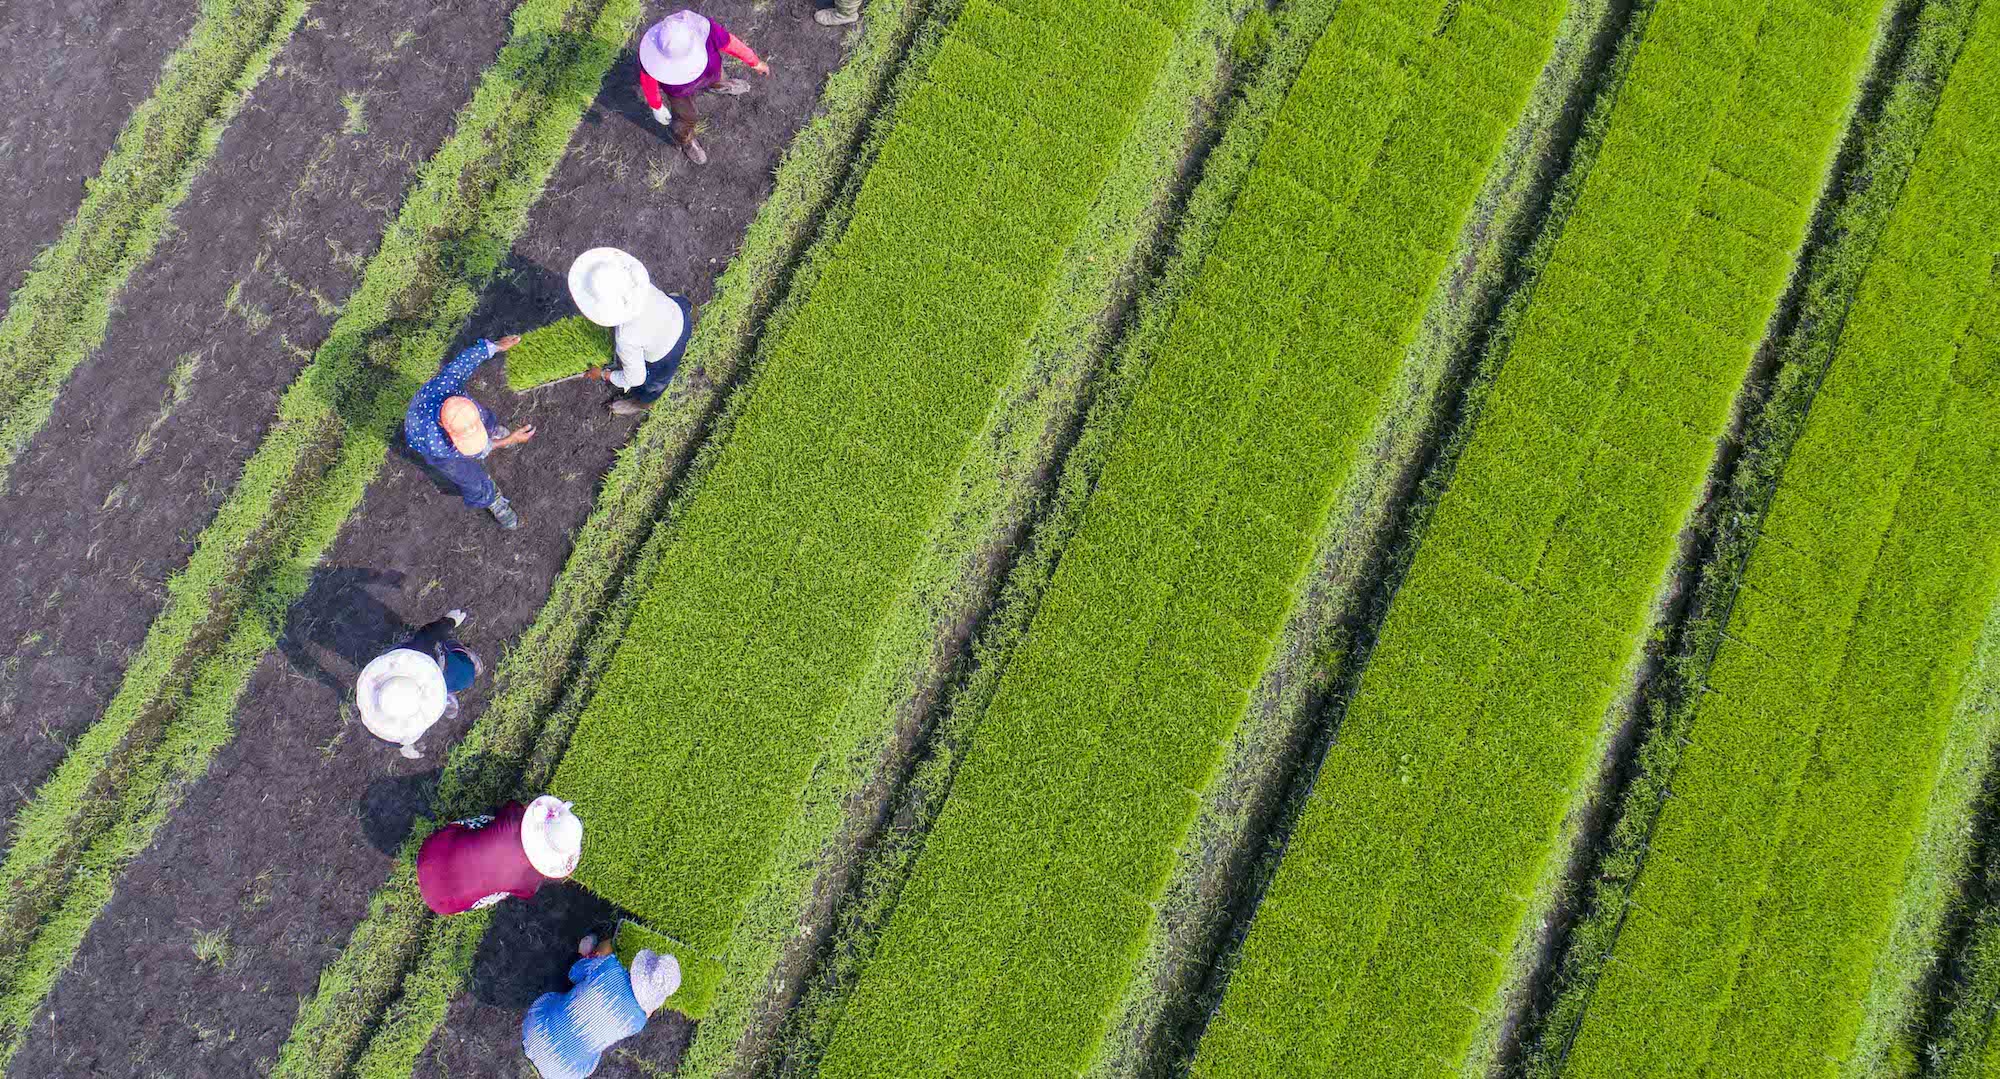 تضرر مساحات كبيرة من محاصيل الأرز في الصين من الأمطار الغزيرة يؤدي إلى مخاوف بشأن الأمن الغذائي